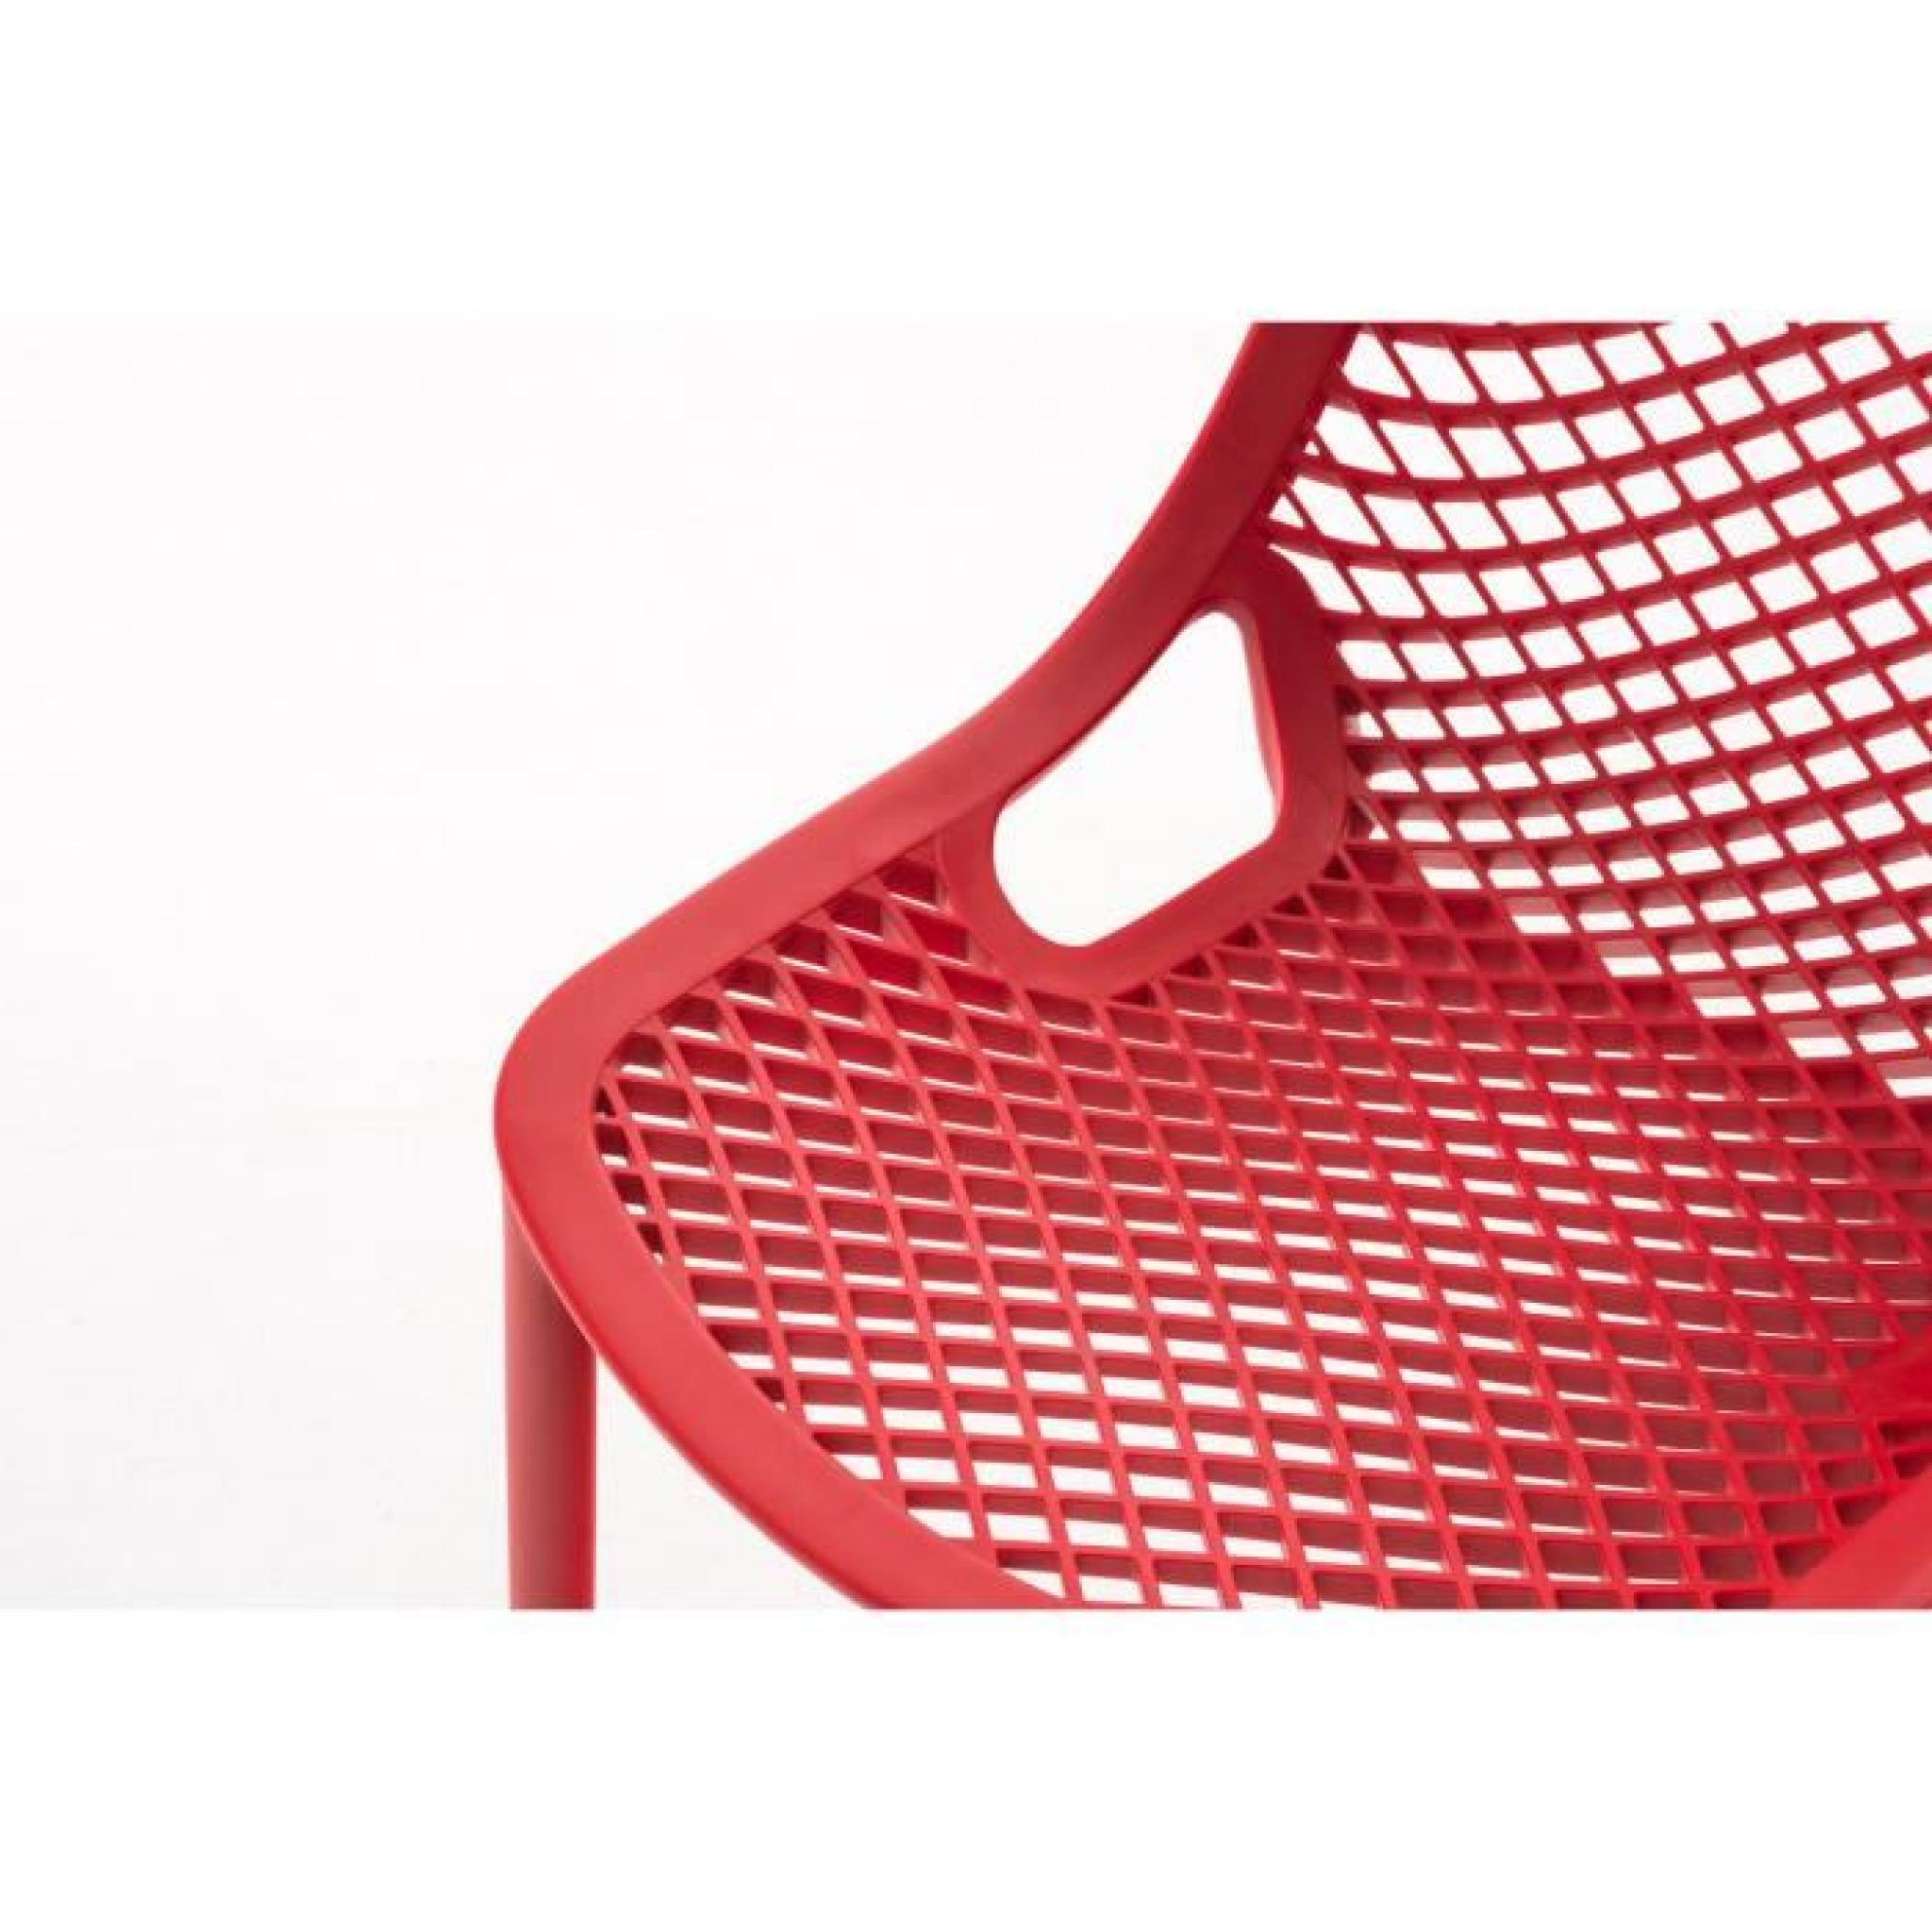 CLP Chaise de jardin empilable AIR en plastique, Chaise de cuisine stable et résistante à l´eau et aux rayons UV, 7 couleurs au c... pas cher